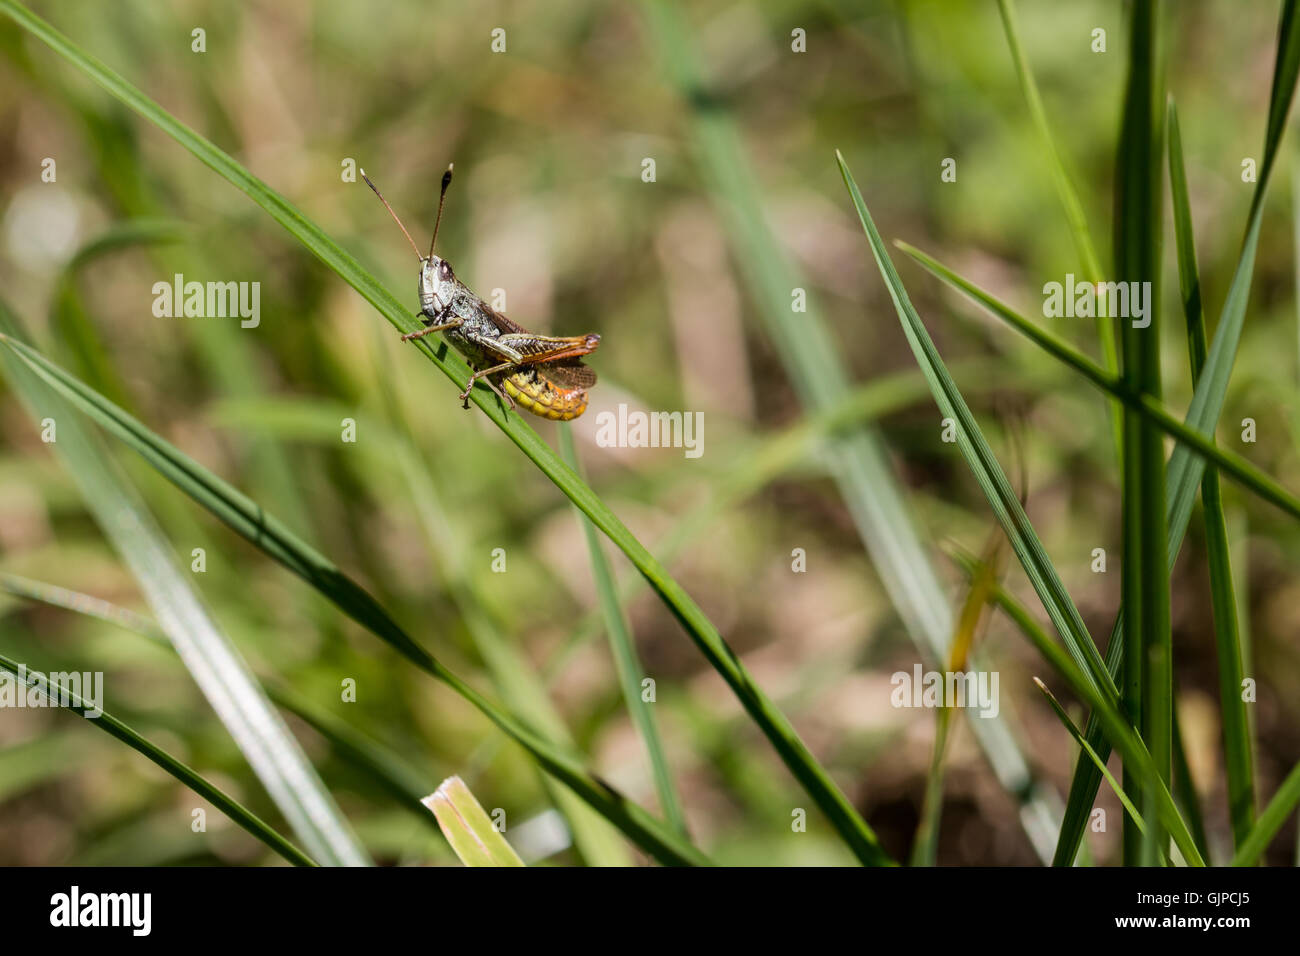 Saltamontes con vientre amarillo sentado en una hoja de hierba Foto de stock